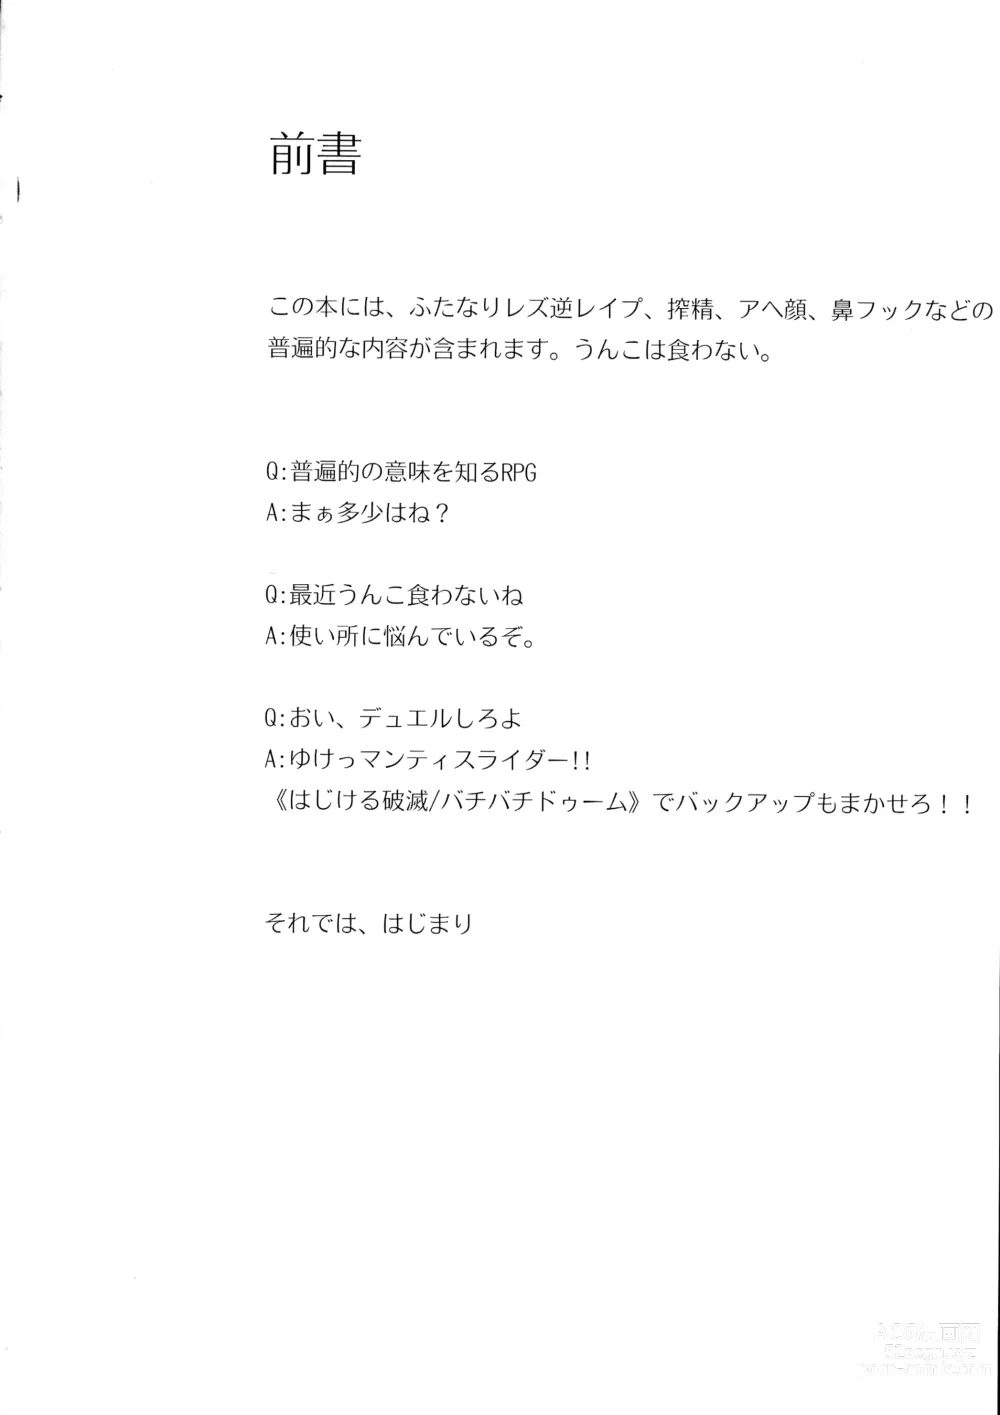 Page 6 of doujinshi Chichuukai-shiki Fuwafuwa Sakusei Full Course